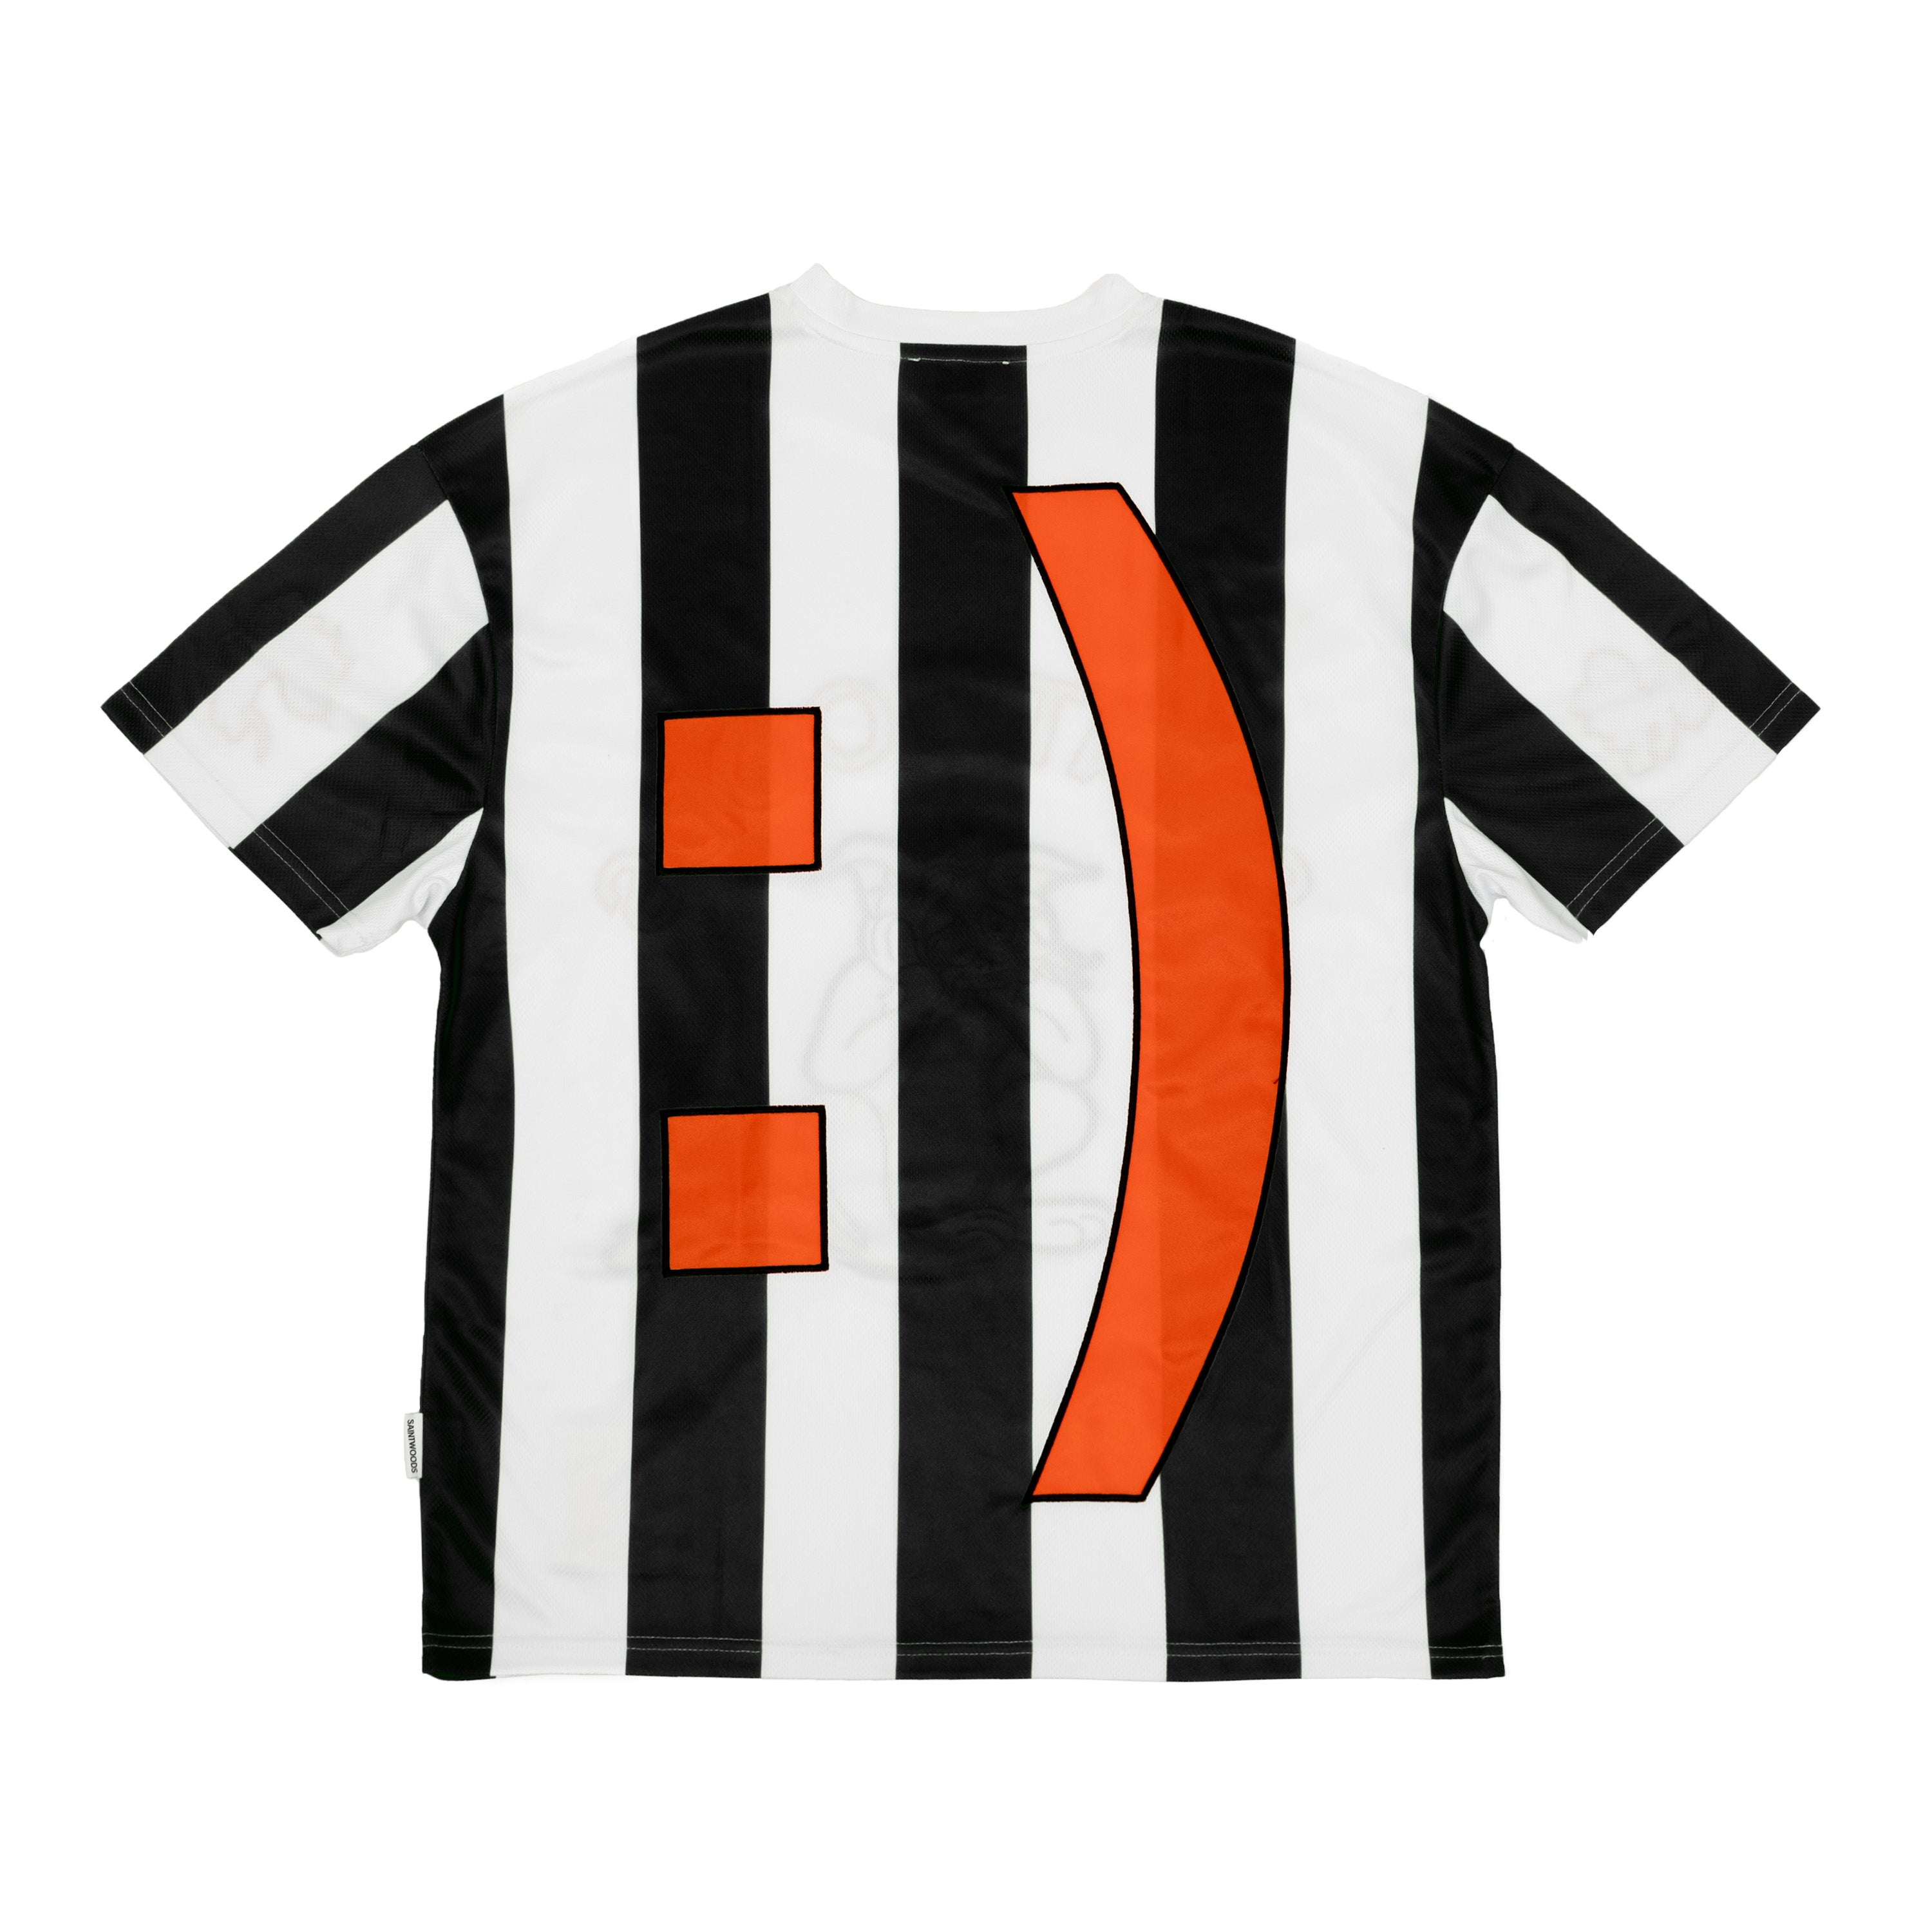 SW Black Striped Jersey